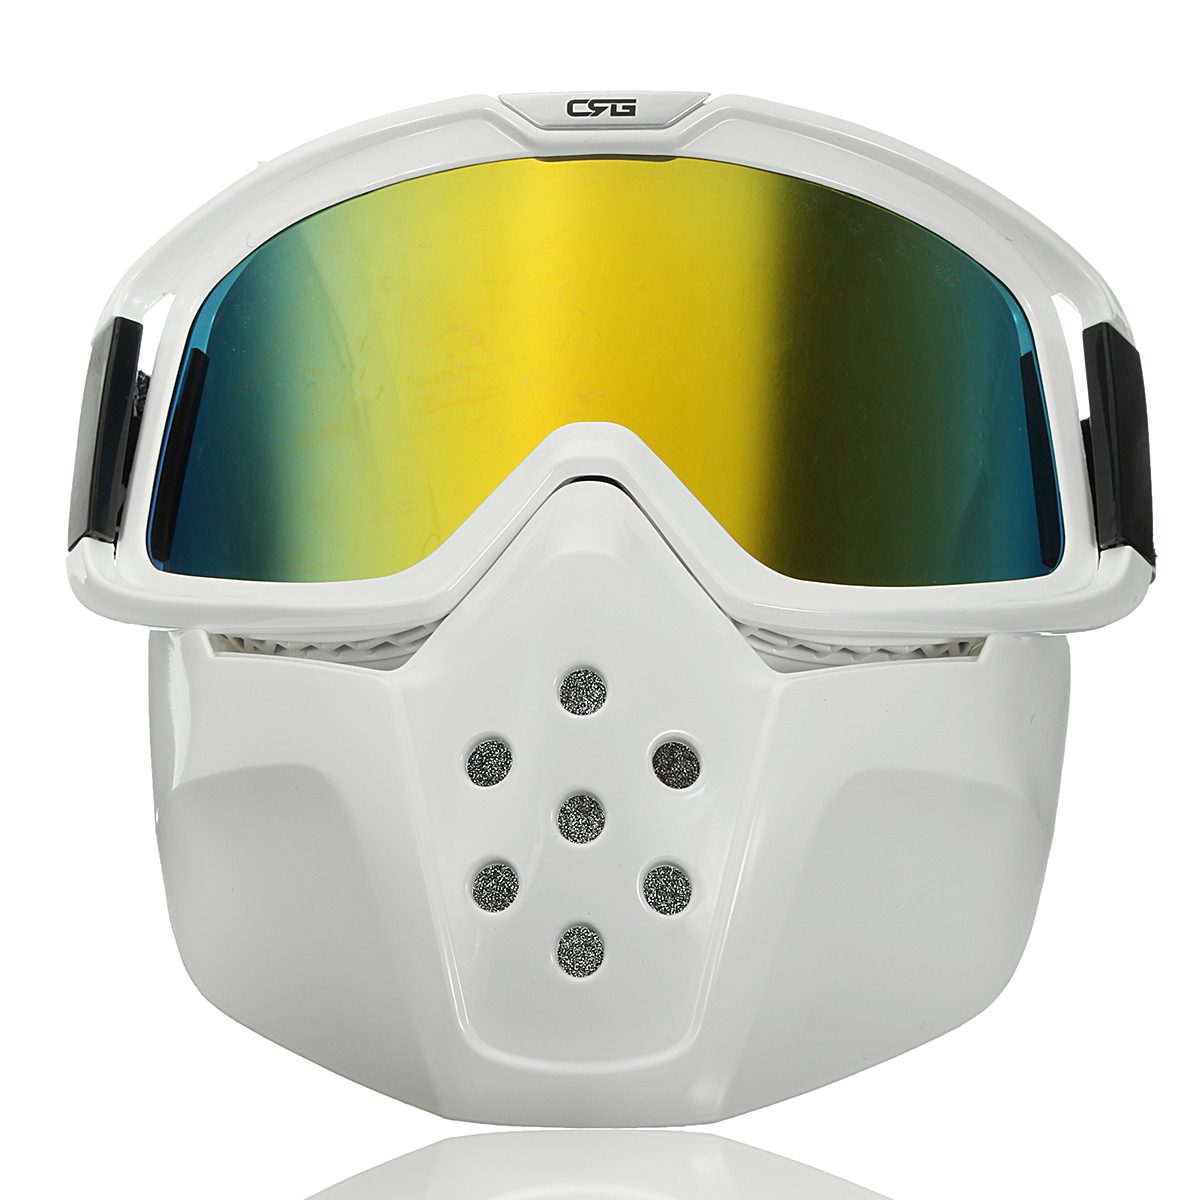 

Съемная модульная маска щит очки езда шлем мотоцикла желтый линзы